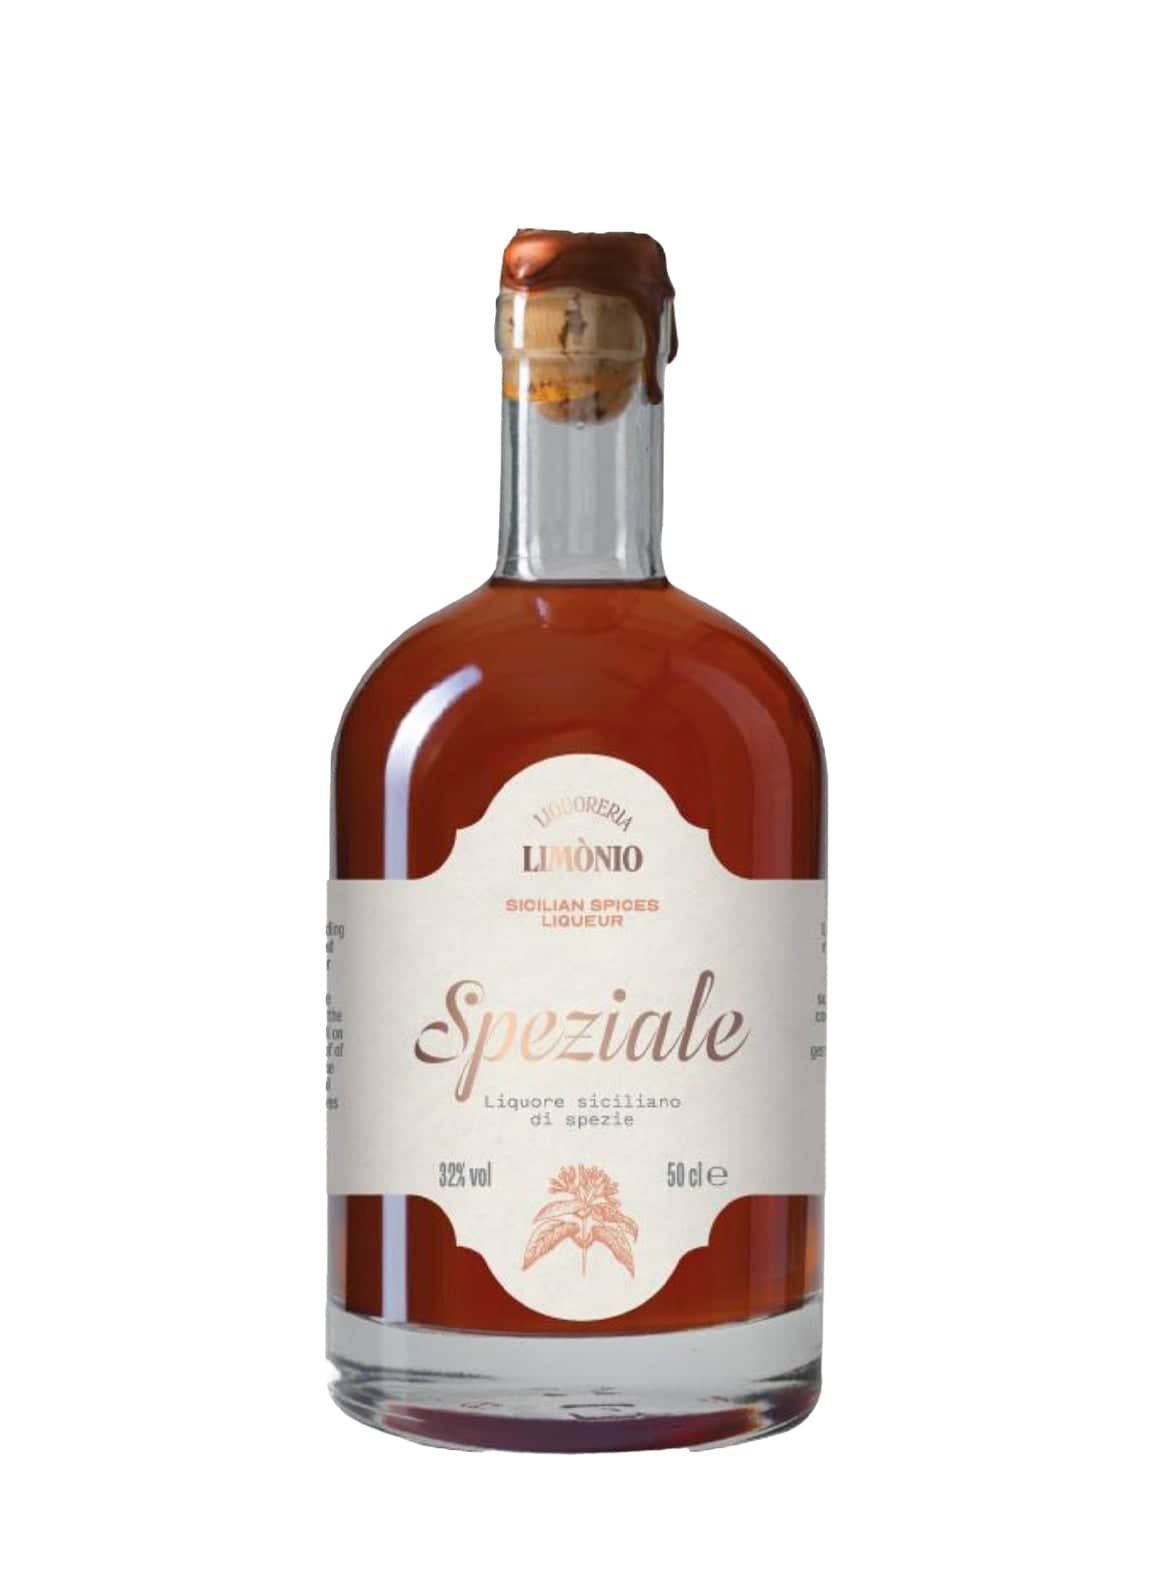 Limonio Speziale spices liqueur 32% 500ml | Spirits of France